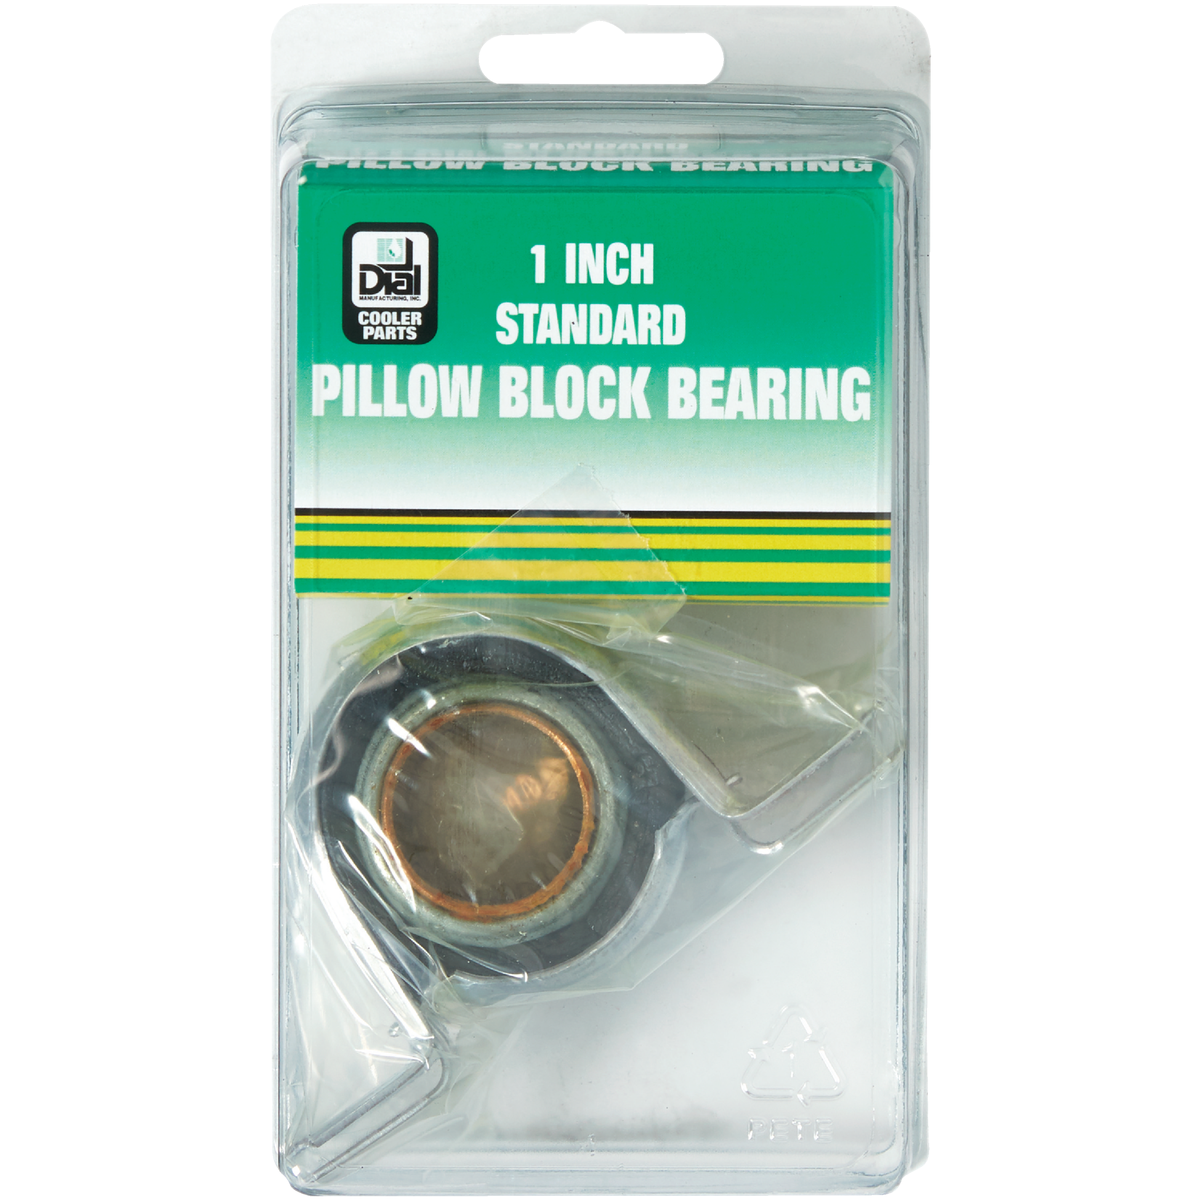 Pillow Block Bearing